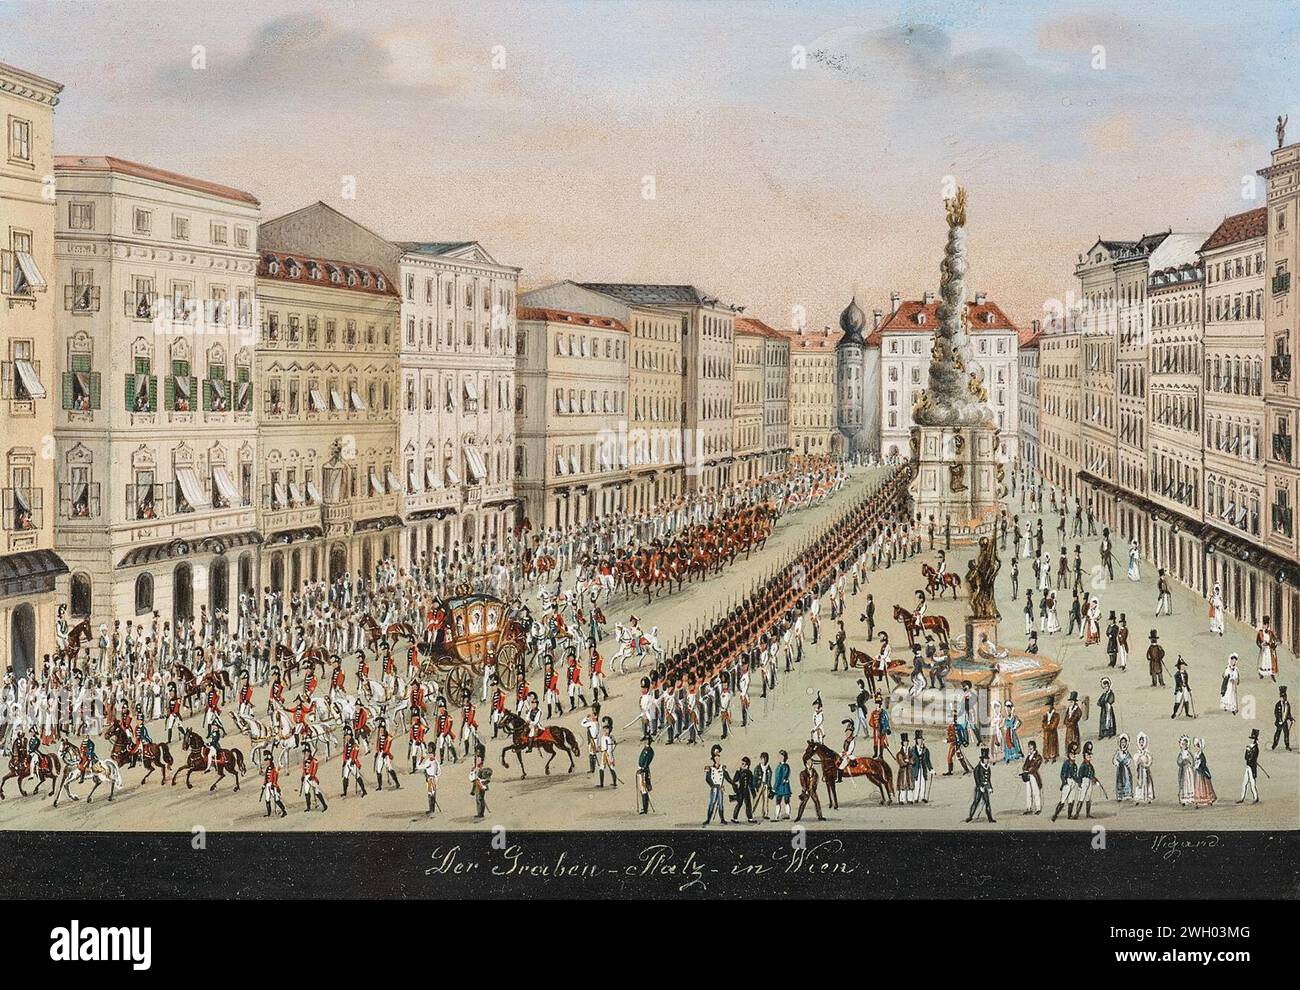 Balthasar Wigand Der Graben-Platz in Wien. Stock Photo